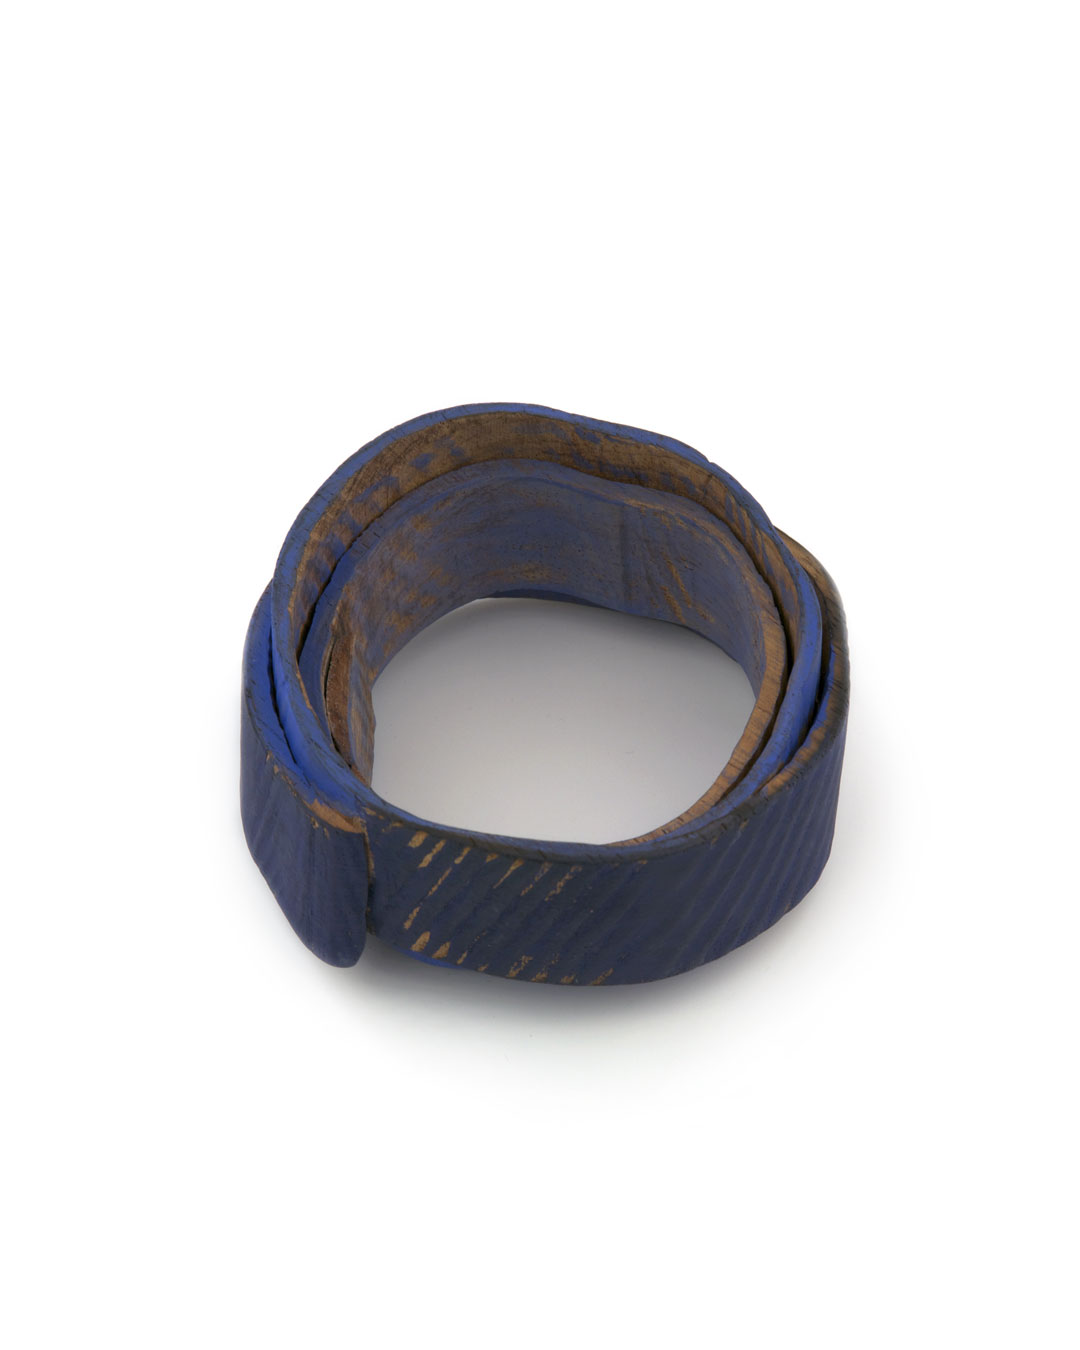 Flóra Vági, Double Blue, 2011, bracelet; padouk, acrylic paint, steel, 95 x 50 mm, €920